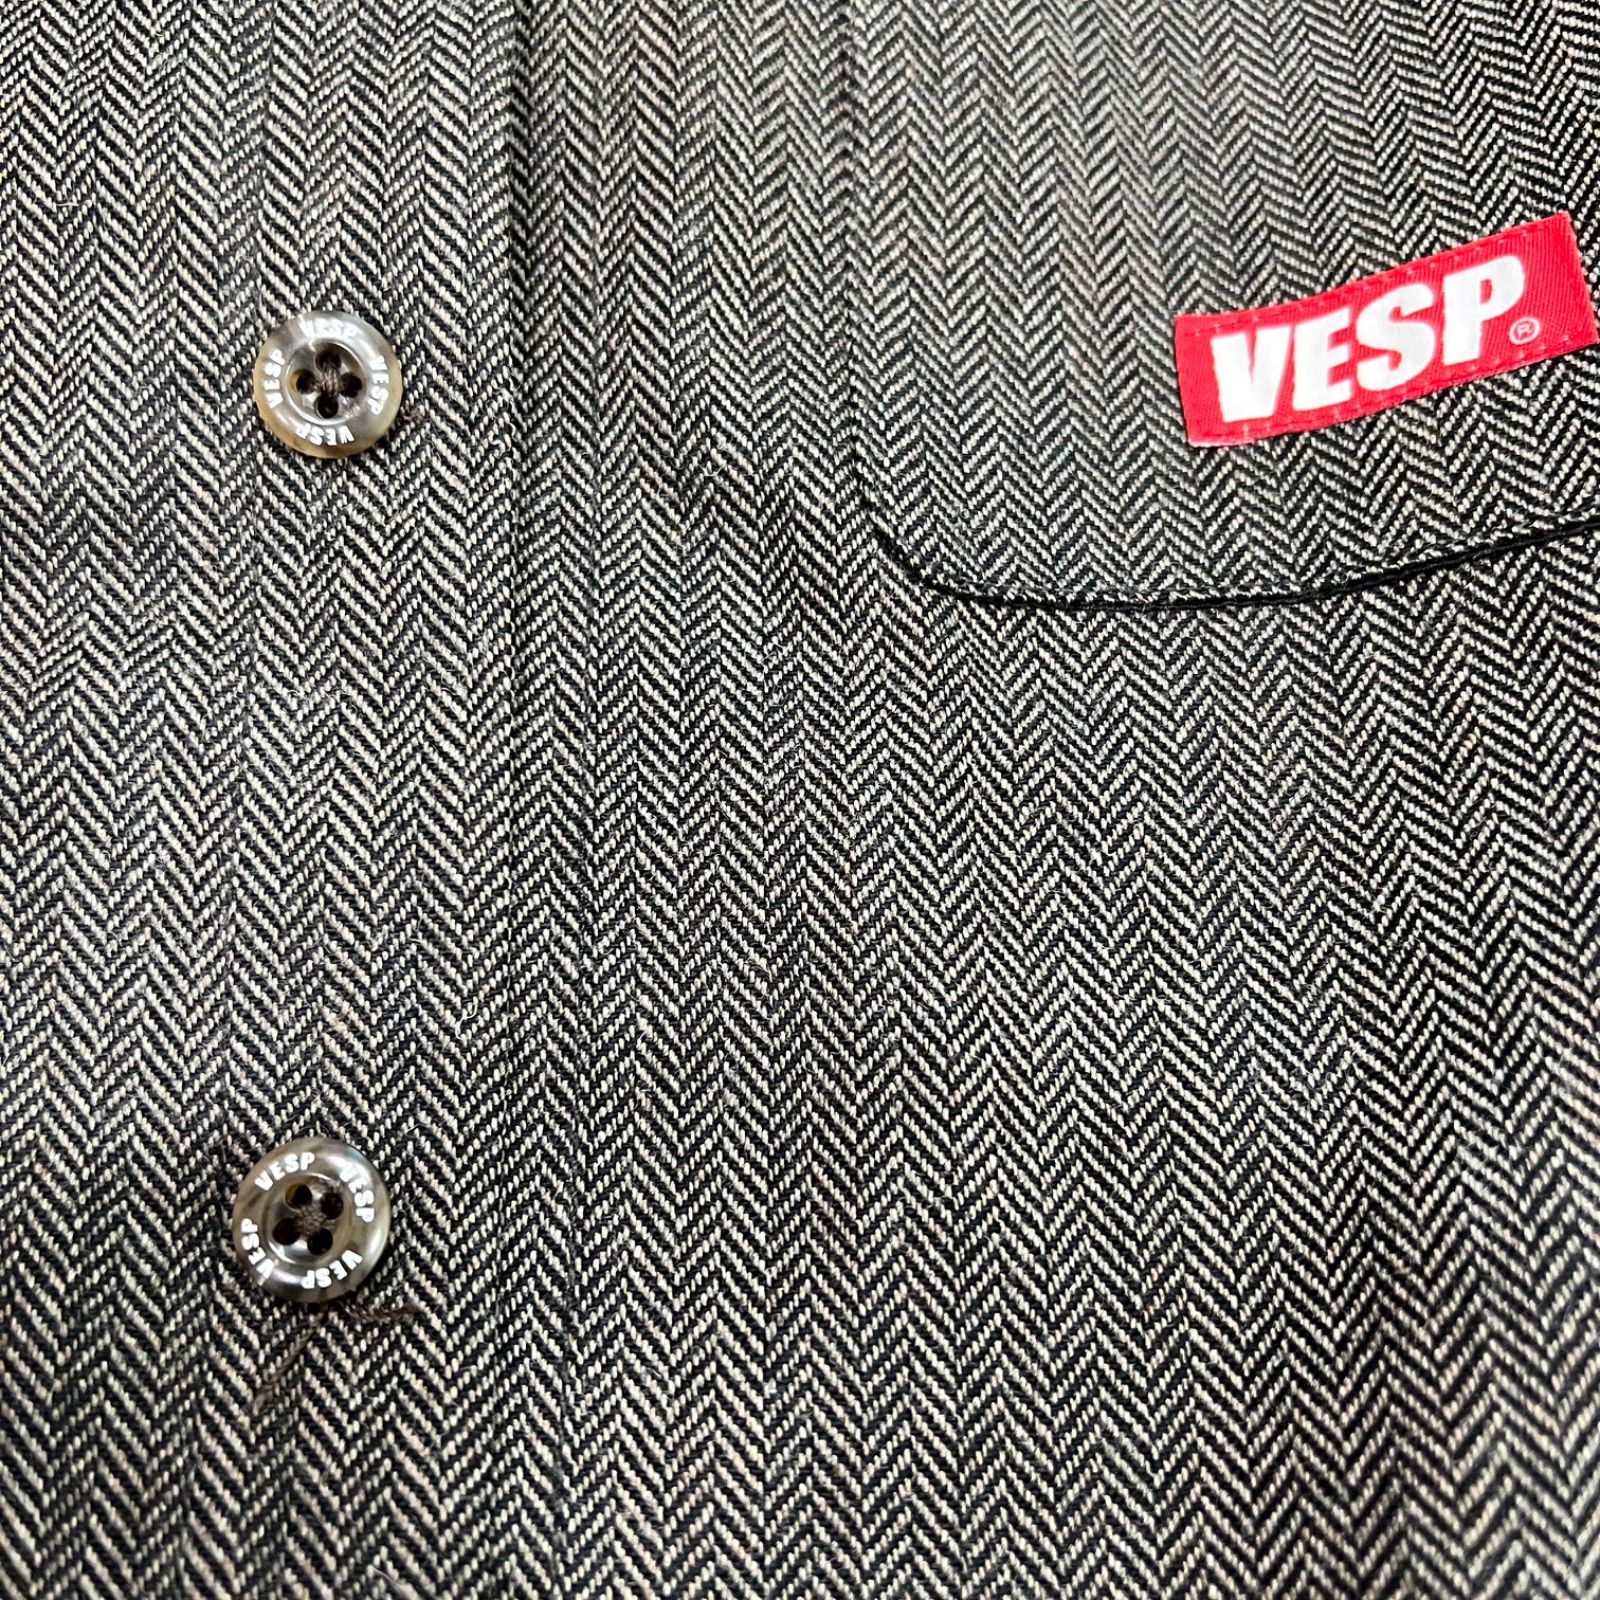 VESP ウェア　ウールシャツジャケット